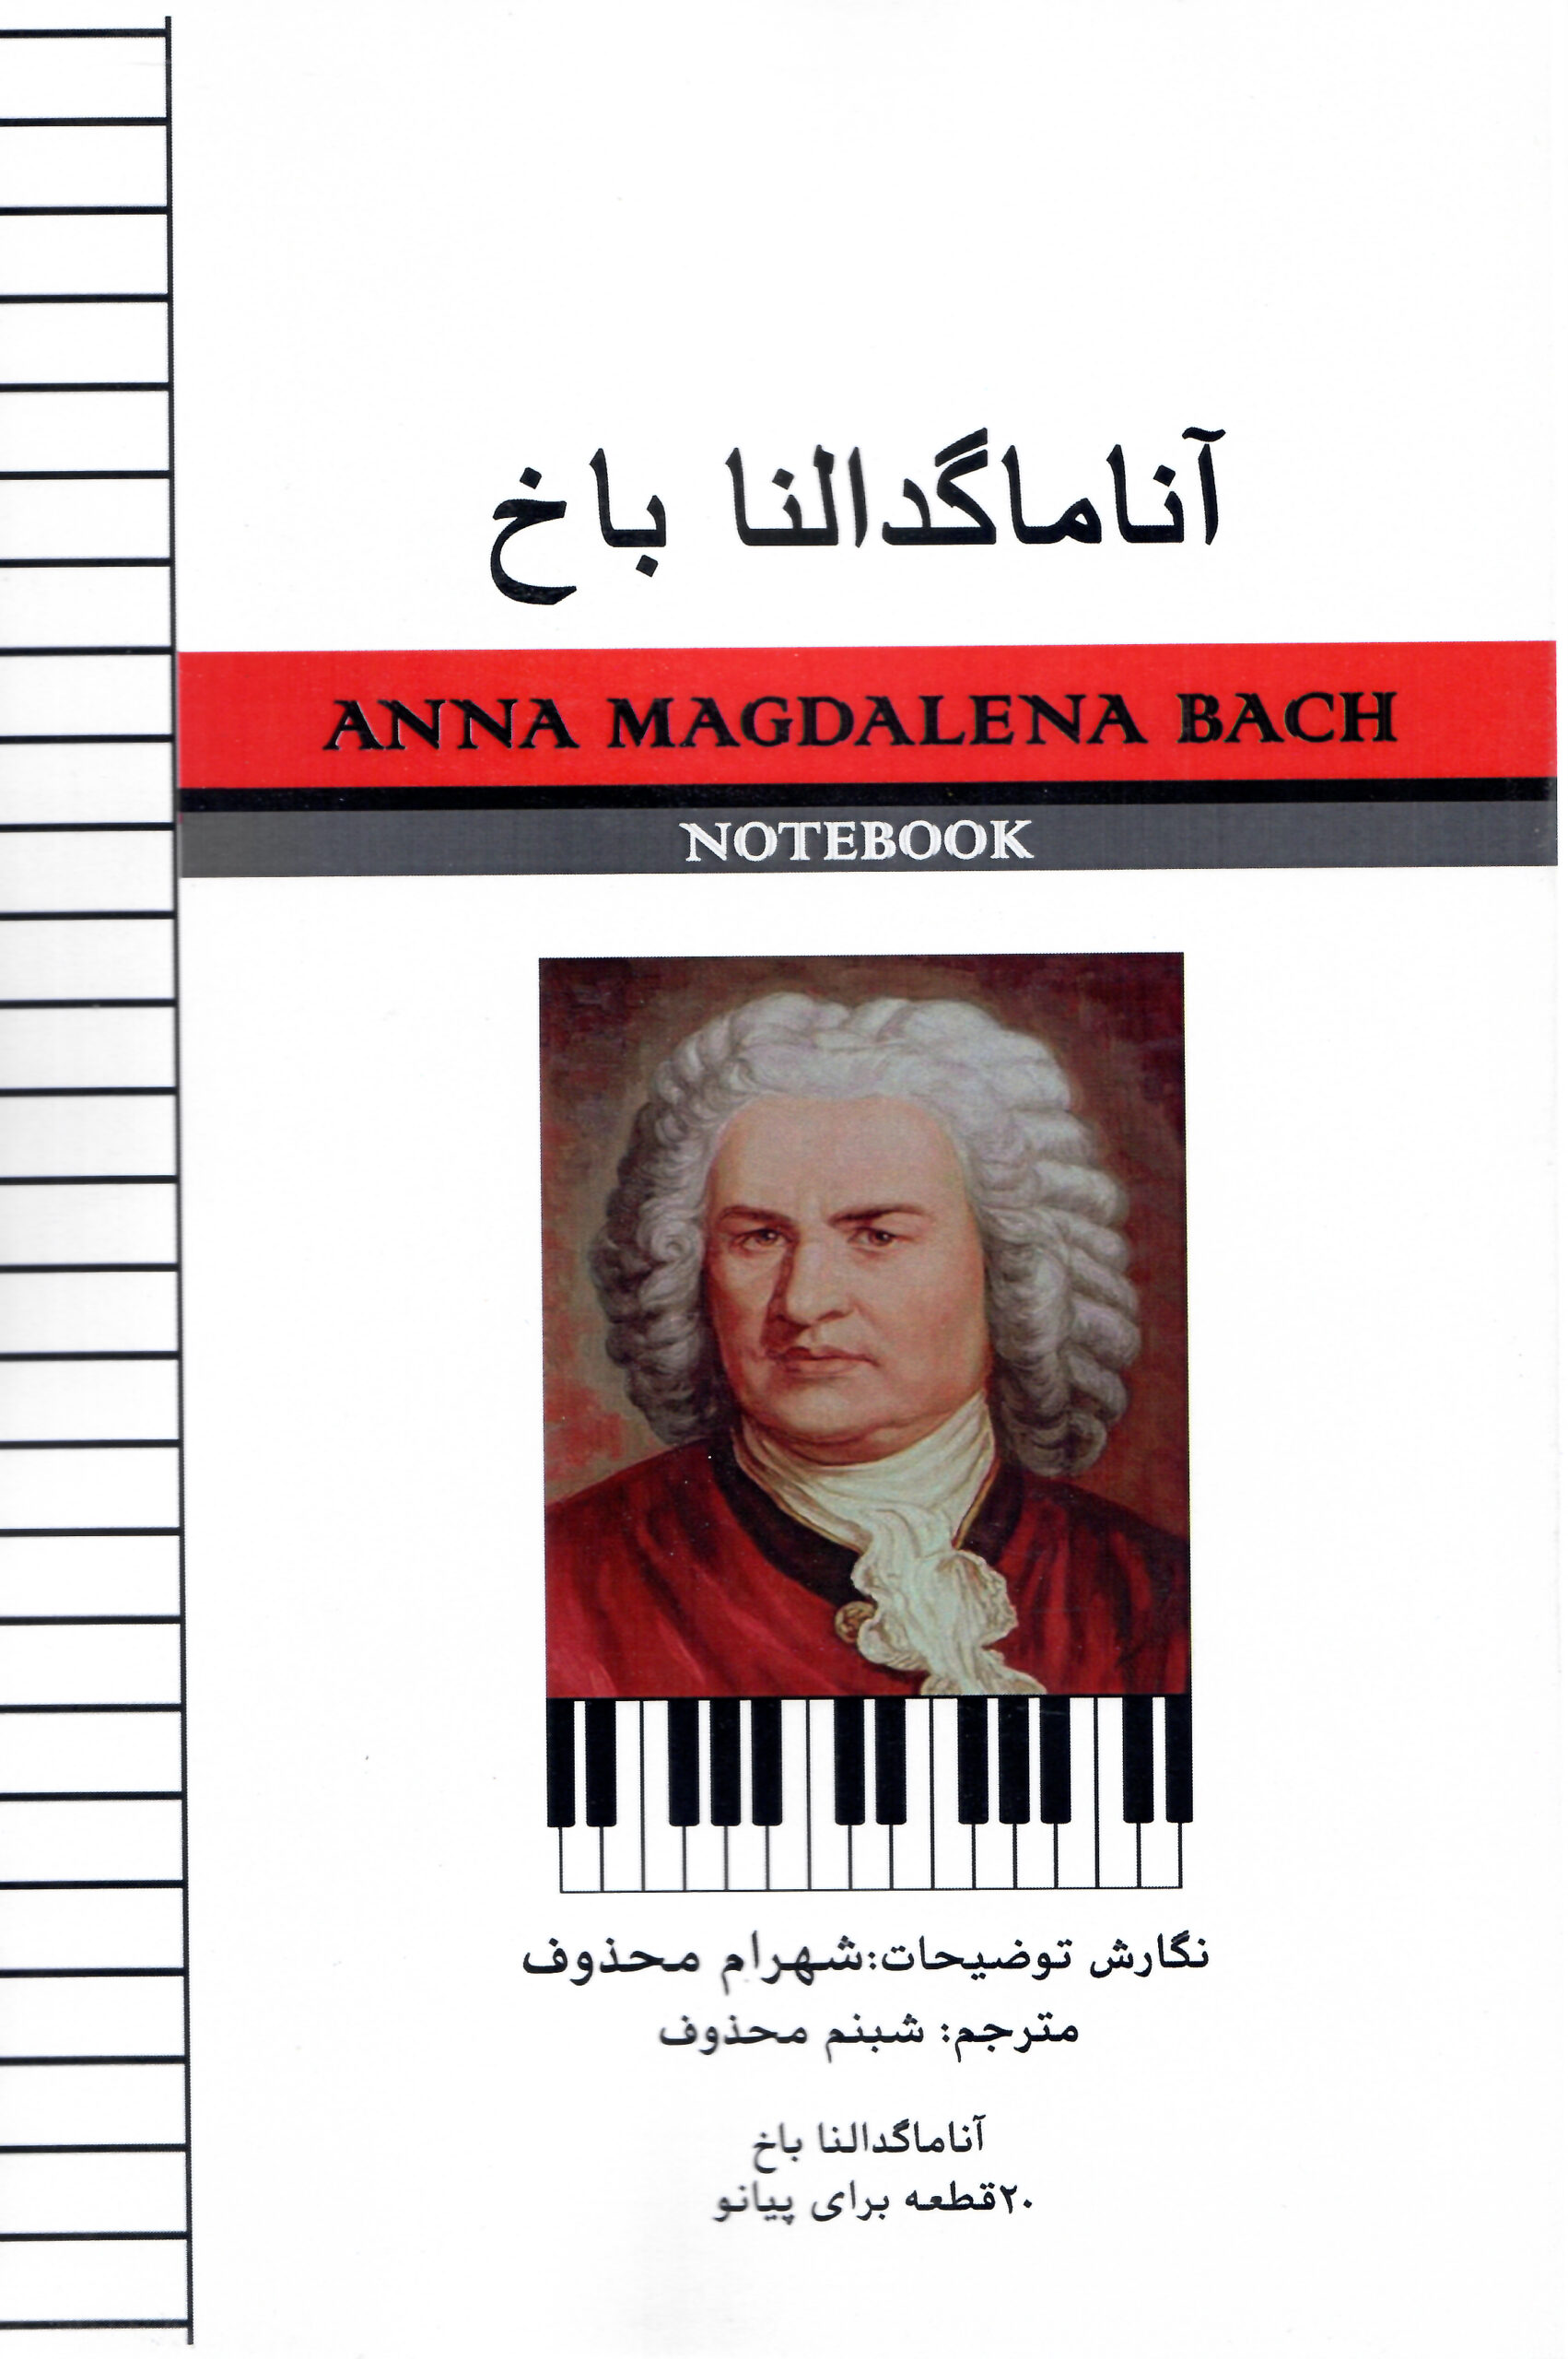 آناماگدالنا باخ ۲۰ قطعه برای پیانو – نگارش توضیحات: شهرام محذوف- مترجم: شبنم محذوف